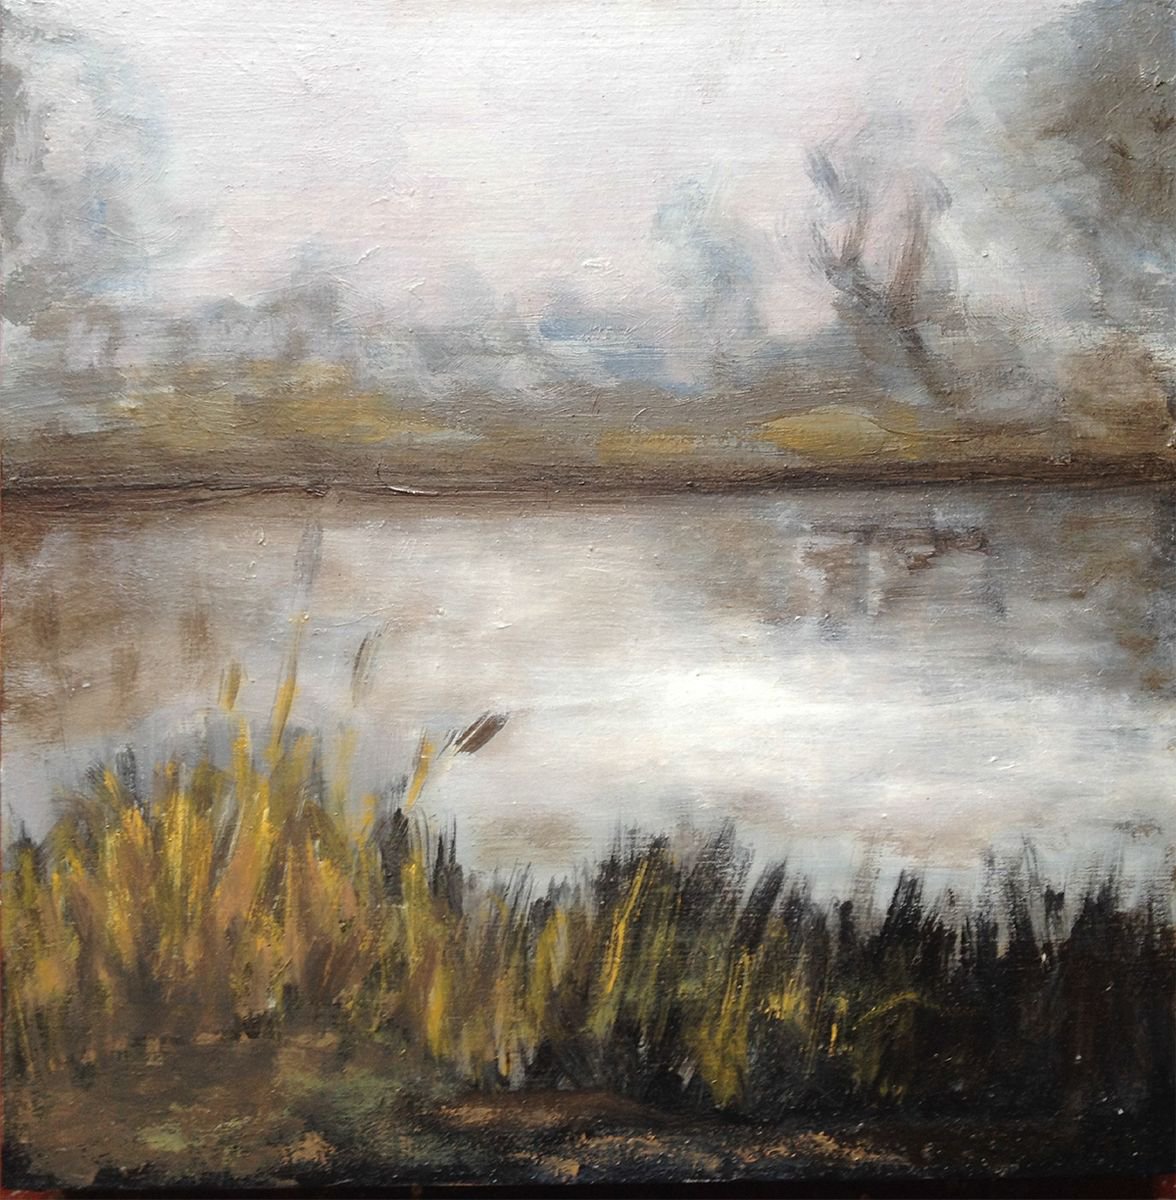 misty lake by Ren Goorman